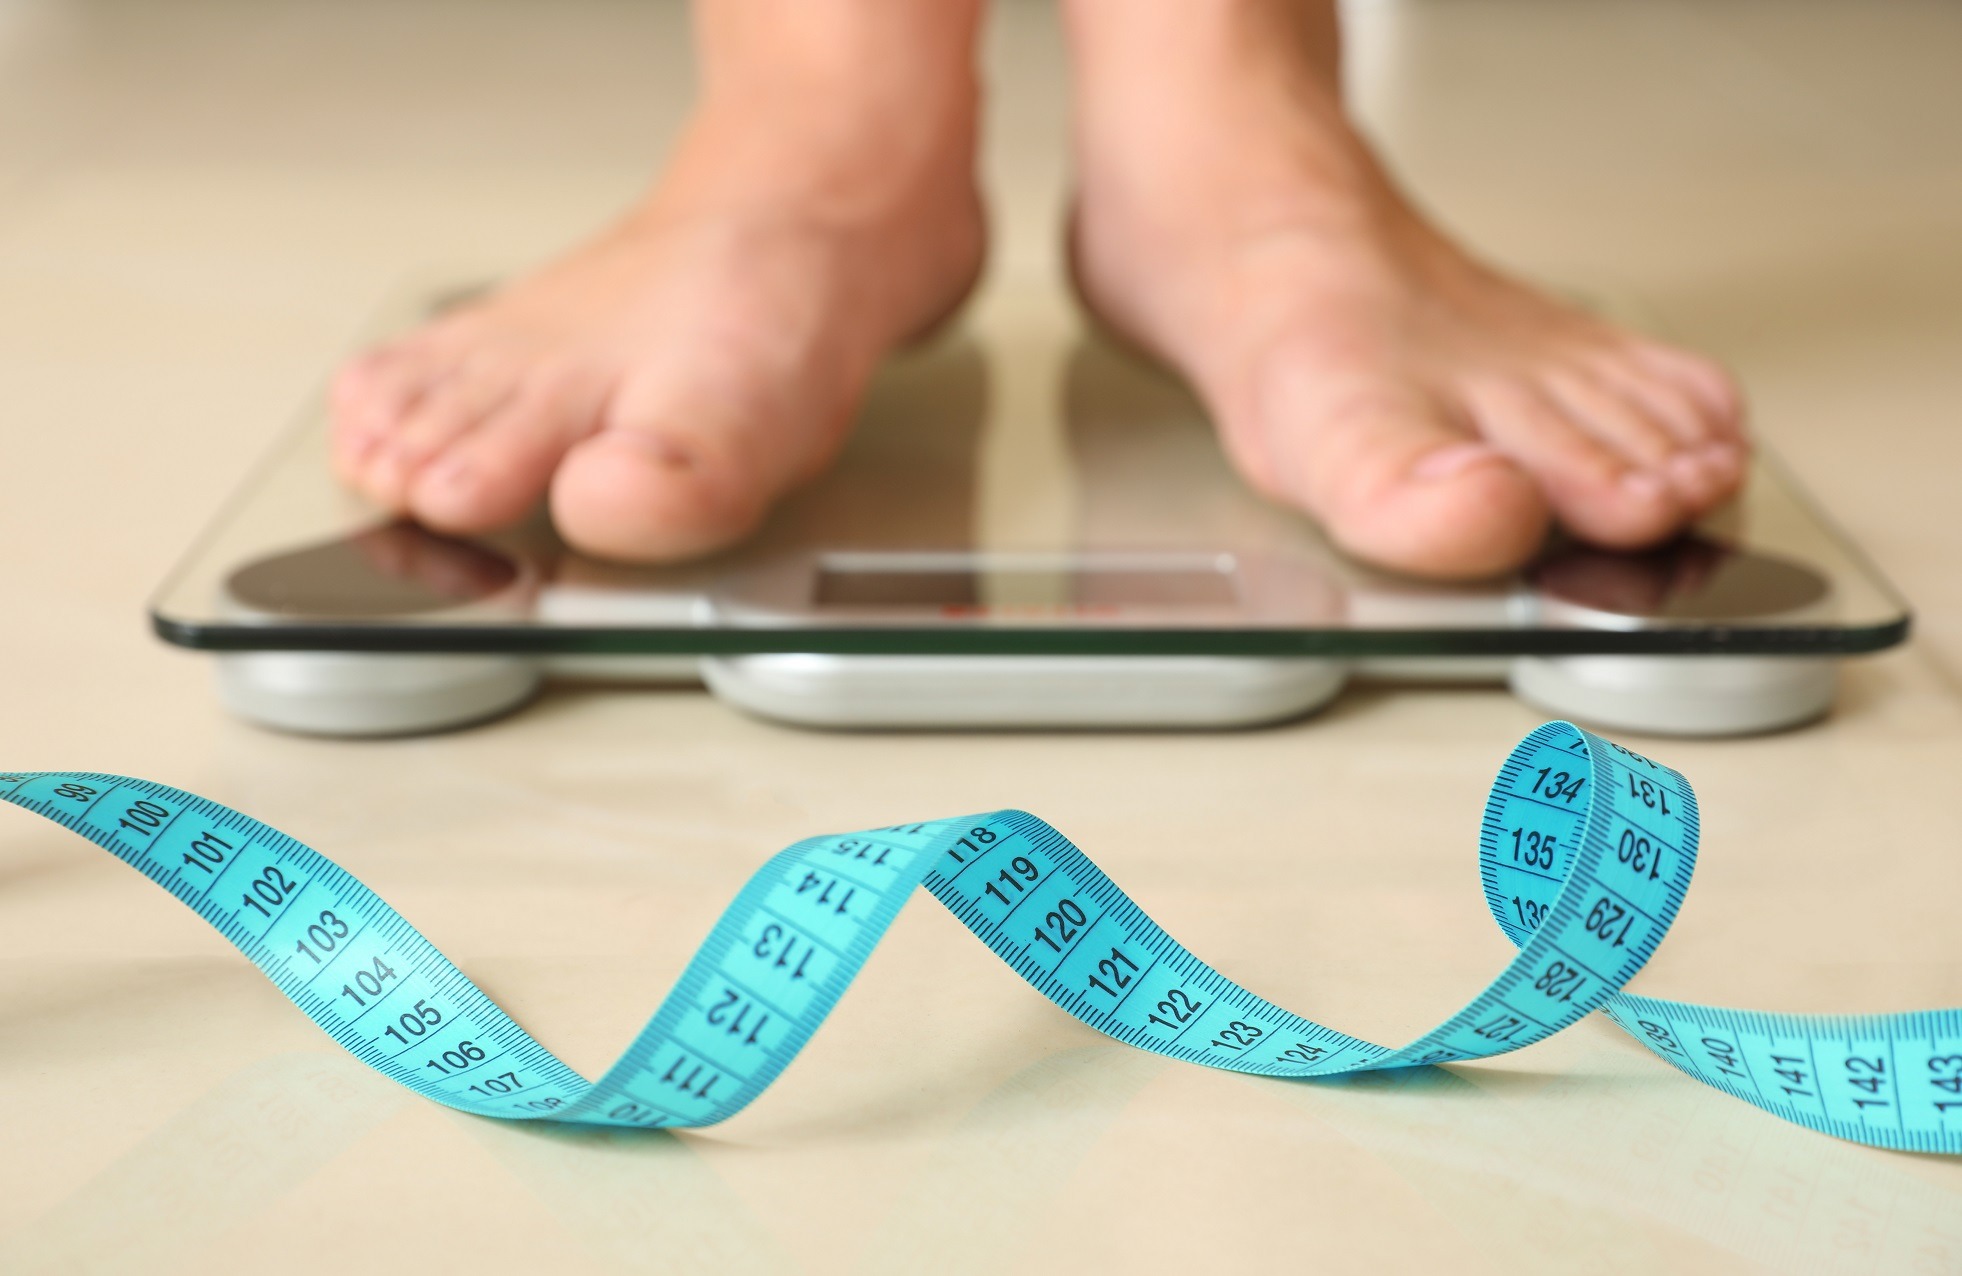 Un site web din SUA oferă 13.000 USD pentru a urma o dietă de 3 luni